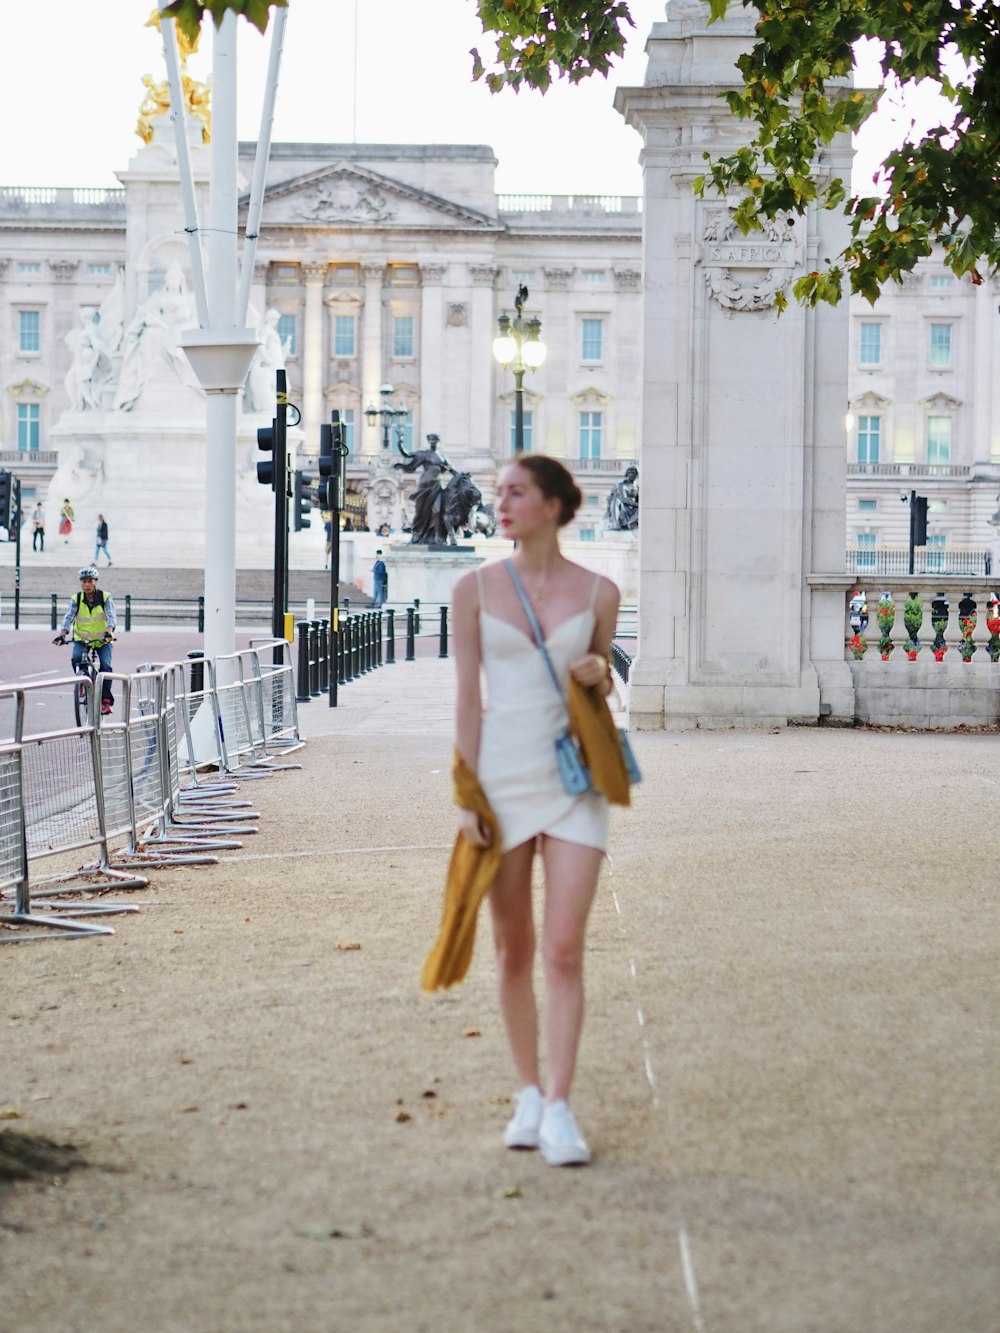 Eine Frau in einem weißen Kleid, die einen Bürgersteig entlanggeht